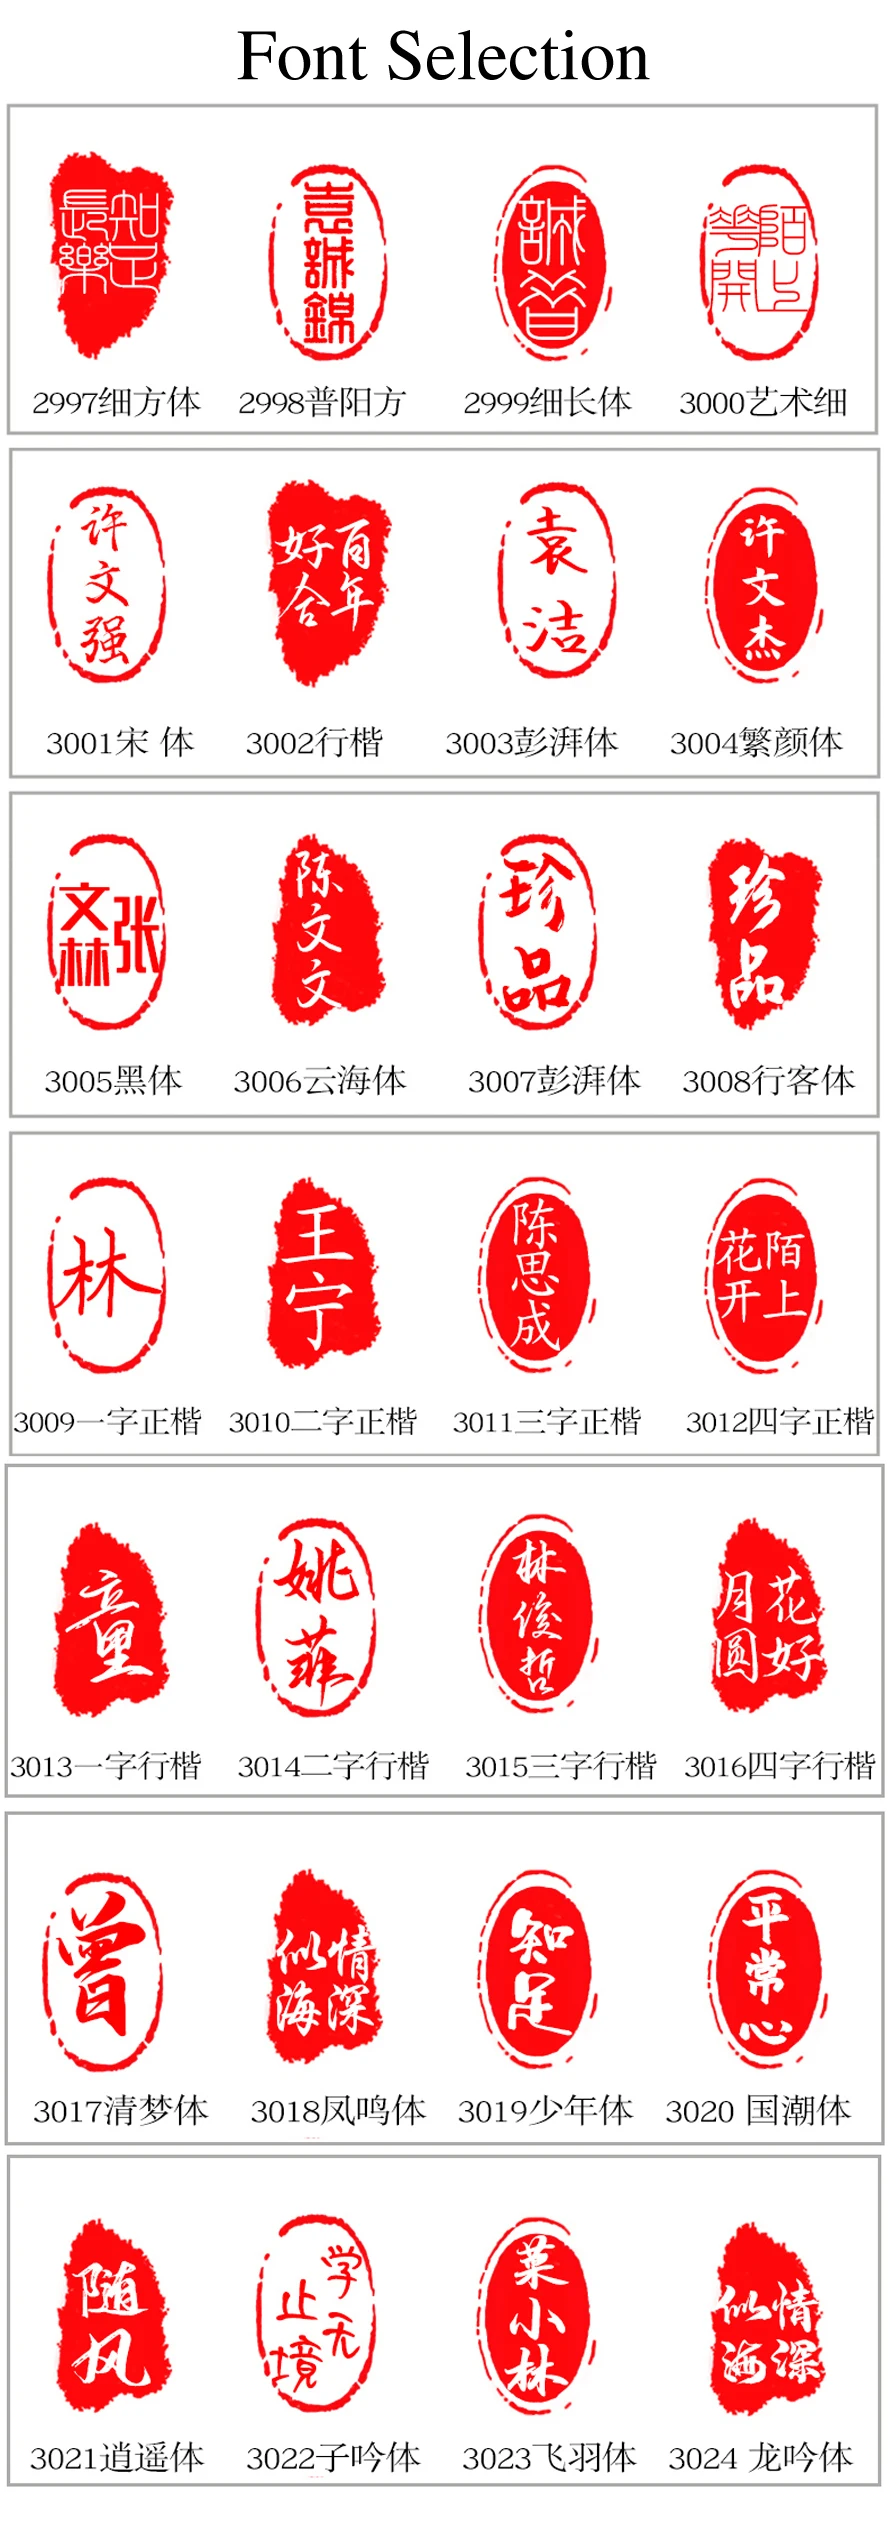 Selo de caligrafia com estampa chinesa tradicional,